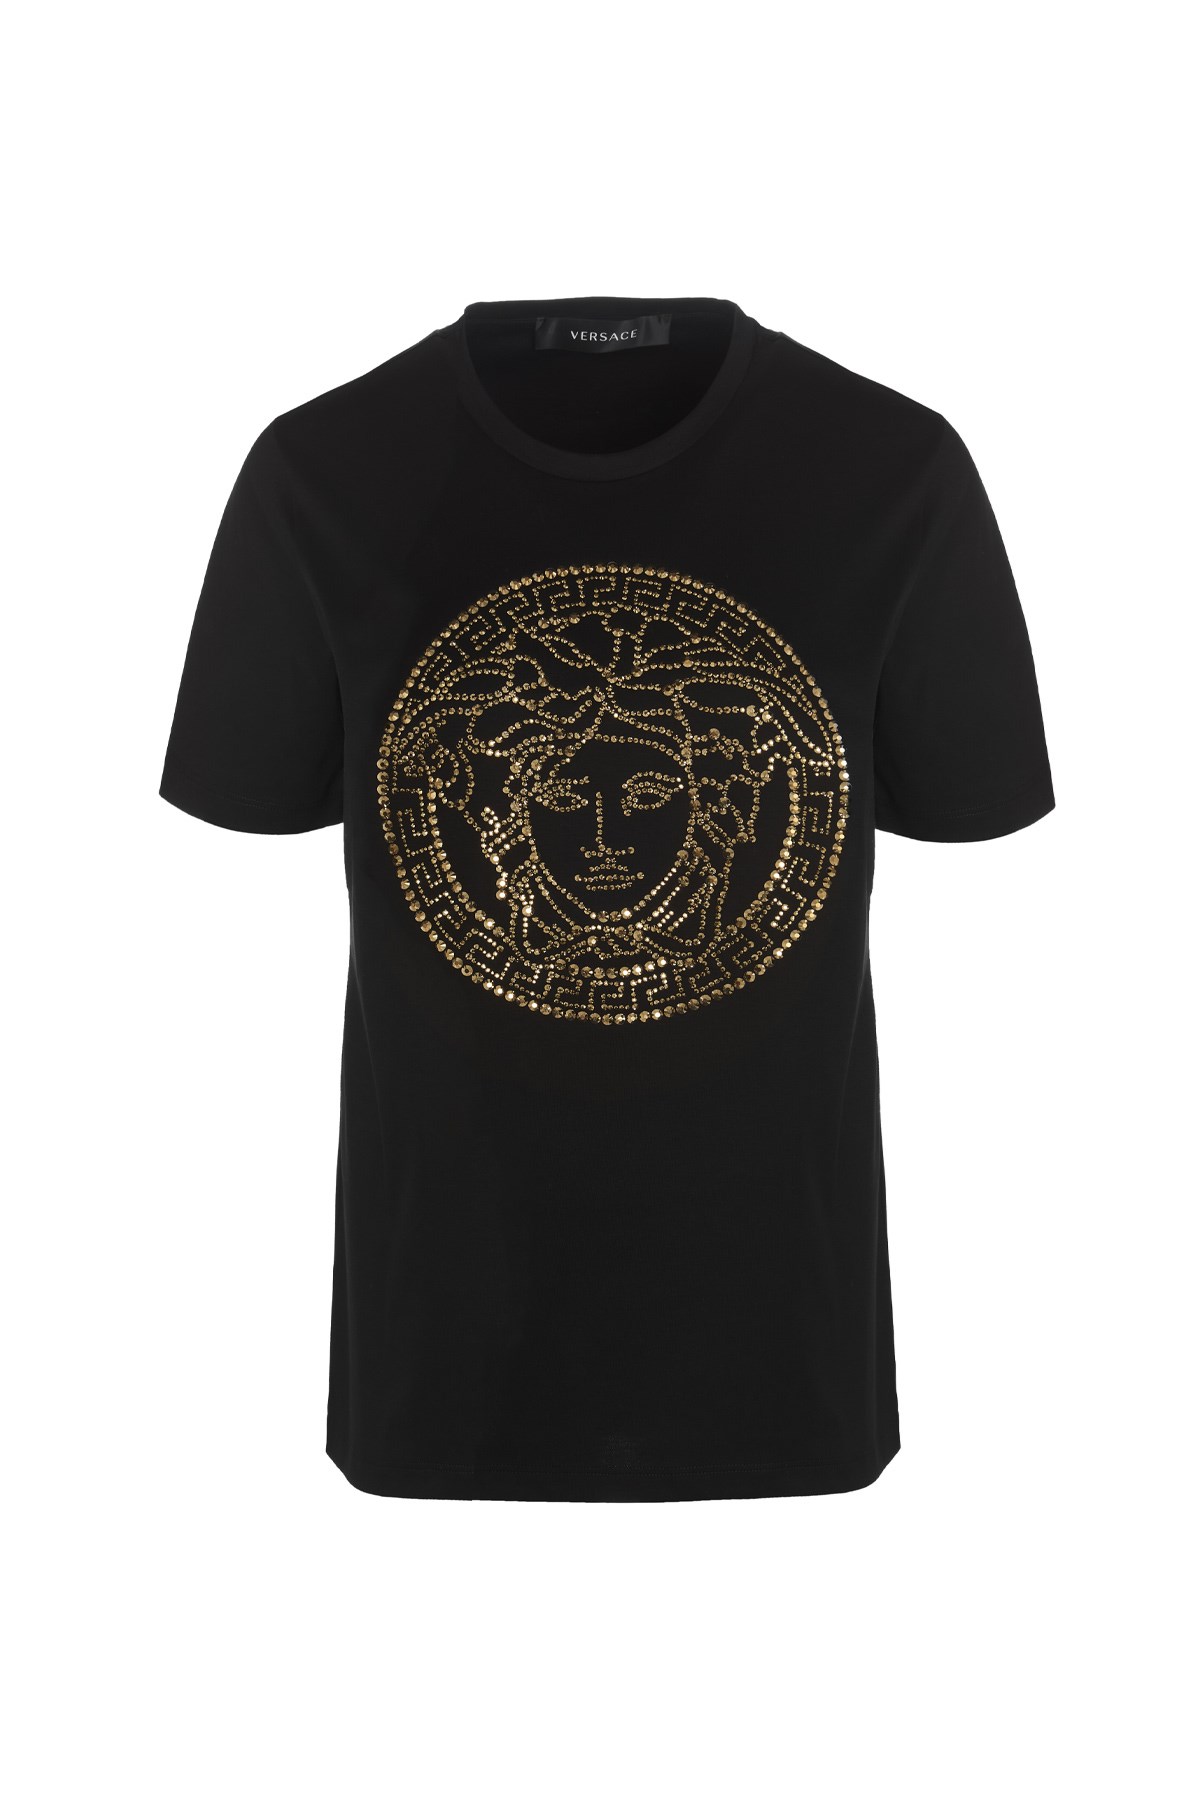 VERSACE 'Medusa’ T-Shirt